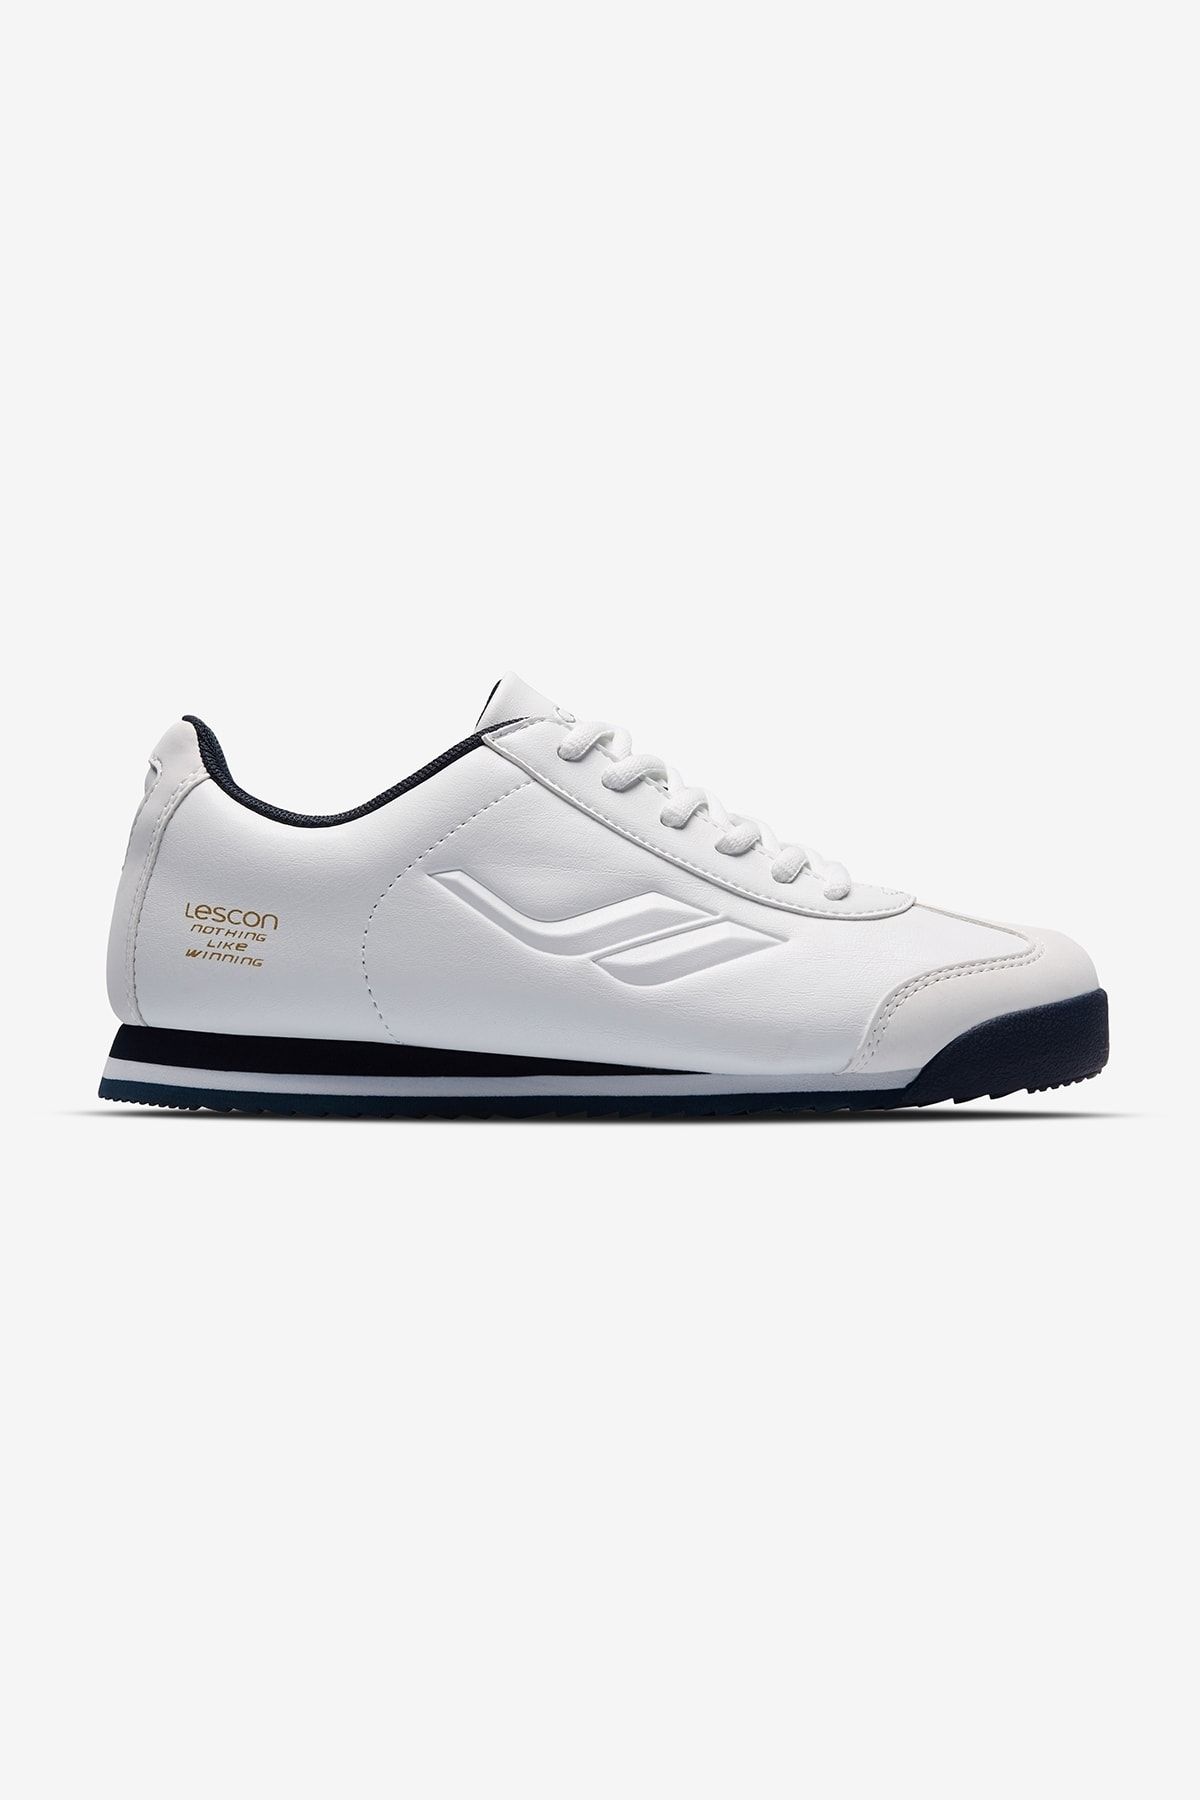 Lescon Unisex Beyaz Winner Sneaker Ayakkabı